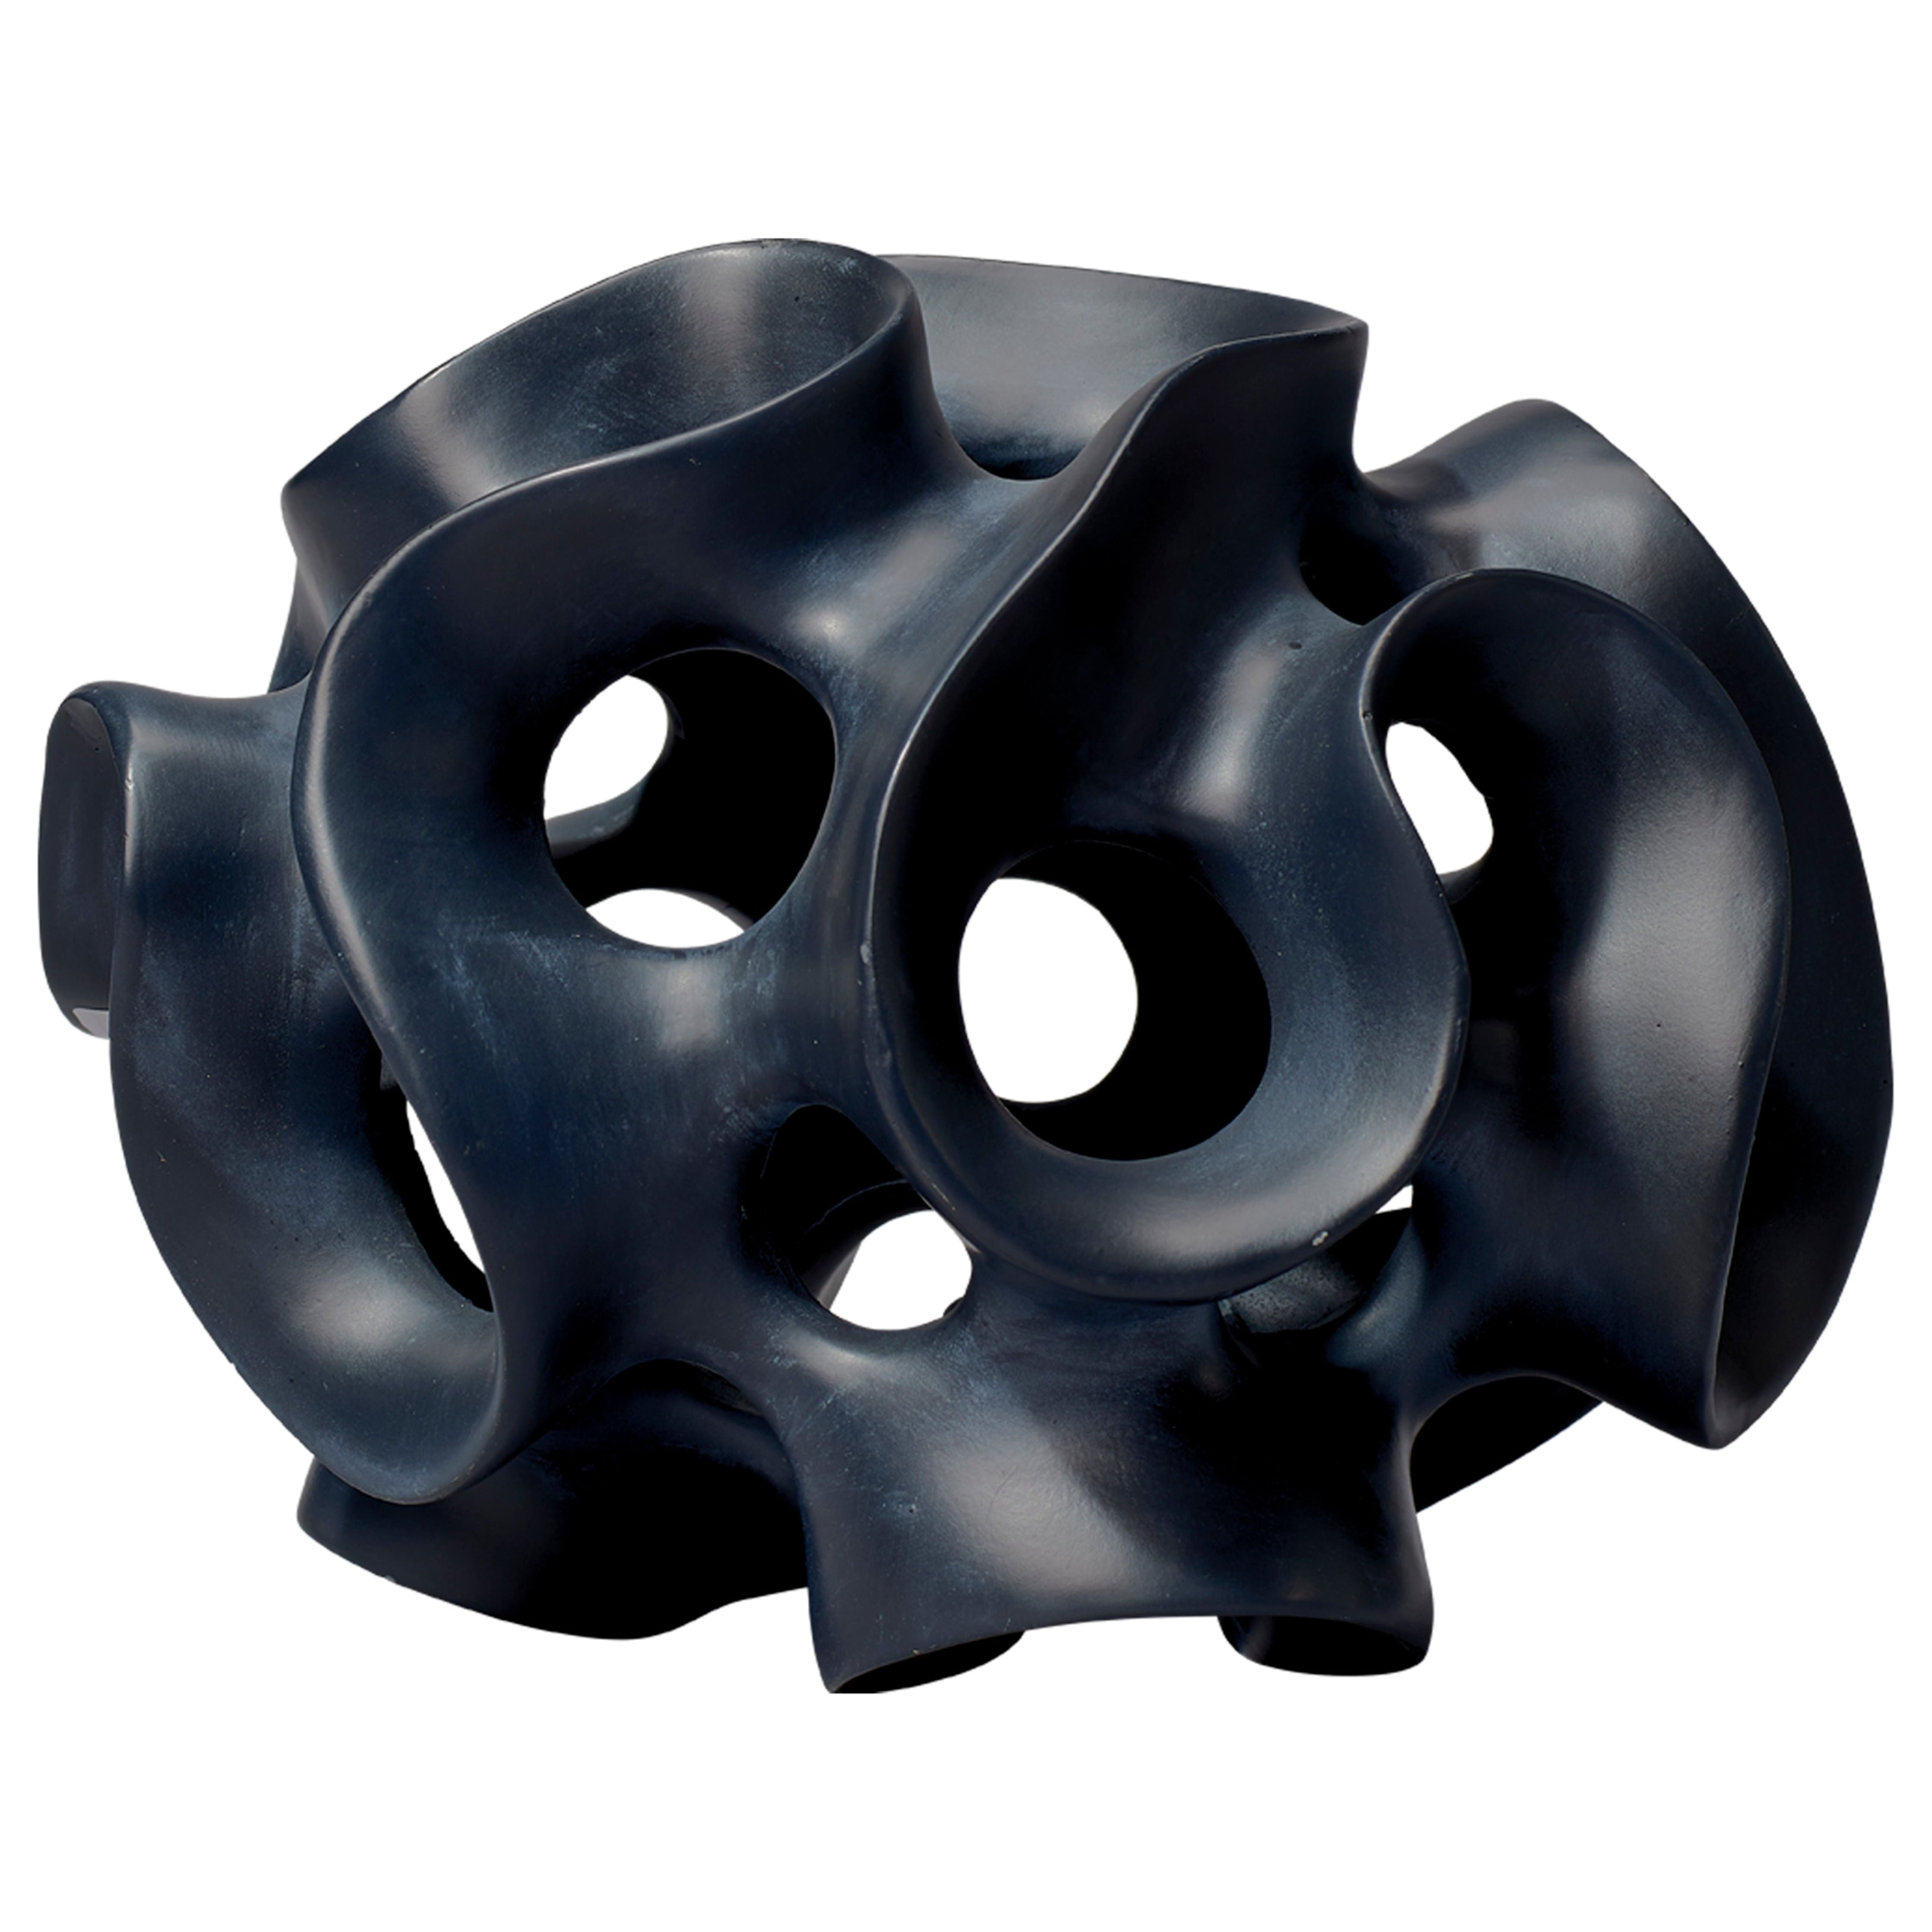 Jamie Young Company - 7RIBB-SPBK - Ribbon Sphere in Black Resin - Ribbon - Black